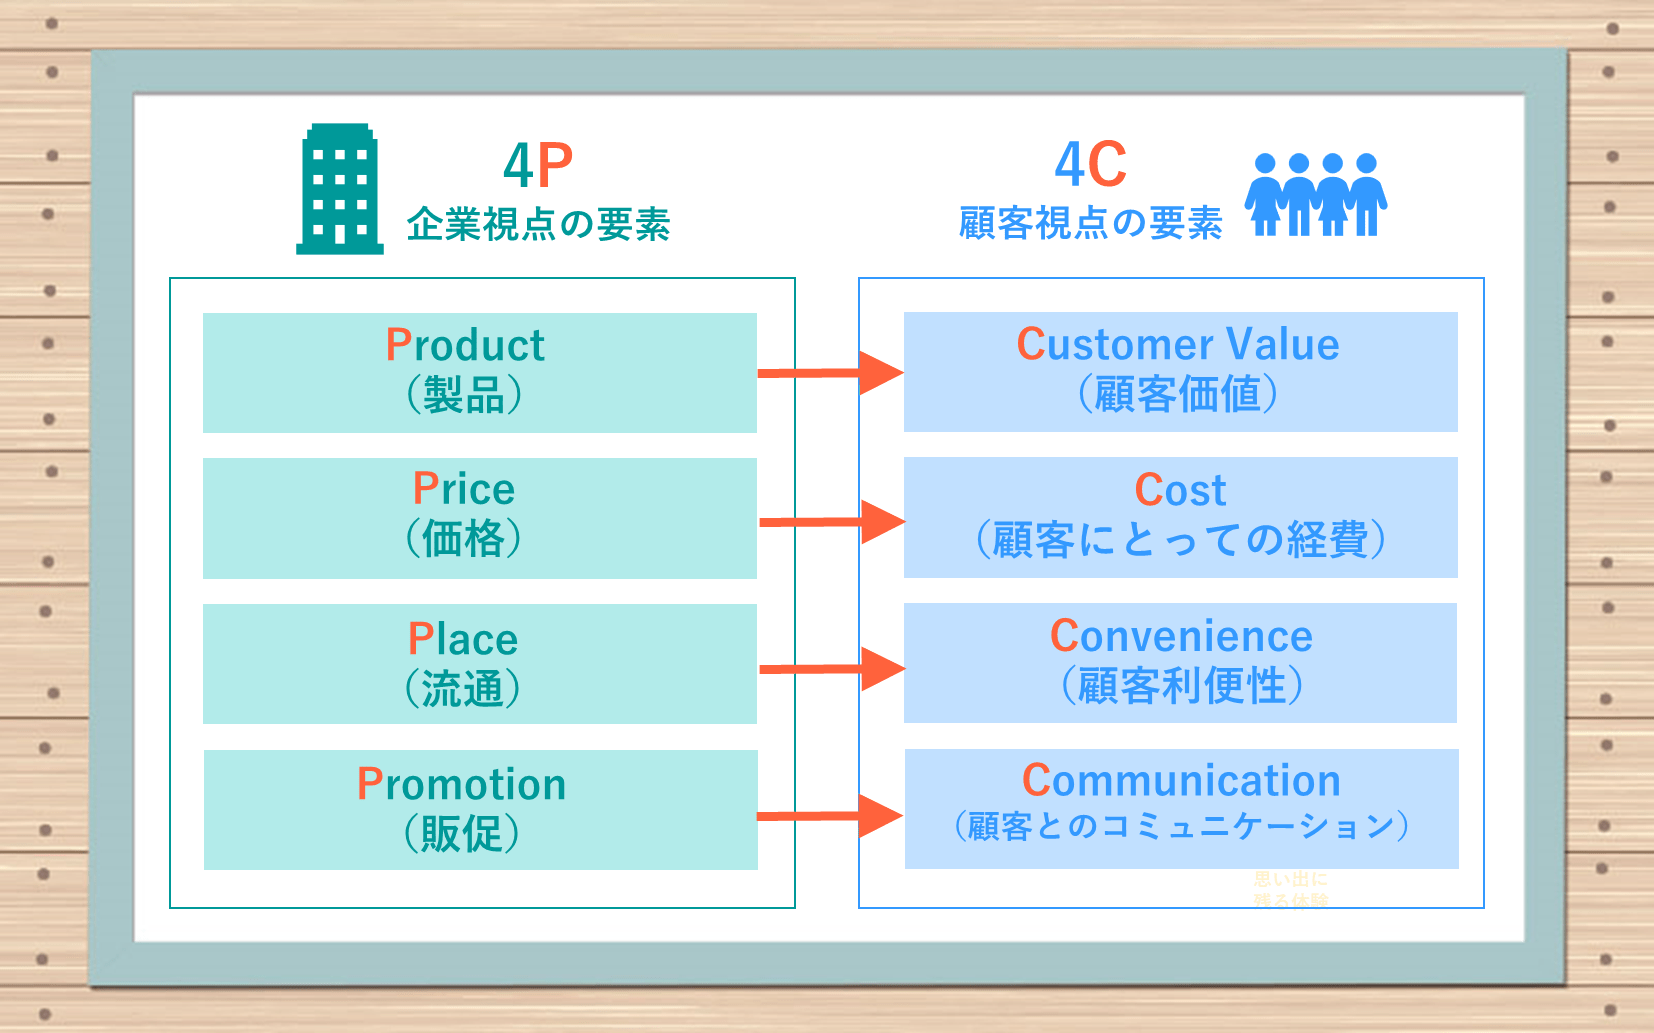 4P・企業視点の要素：商品（Product）、価格（Price）、プロモーション（Promotion）、流通（Place）　4C・顧客視点の要素：顧客価値（Customer Value）・顧客にとっての経費（Cost）・顧客利便性（Convenience）・顧客とのコミュニケーション（Communication）